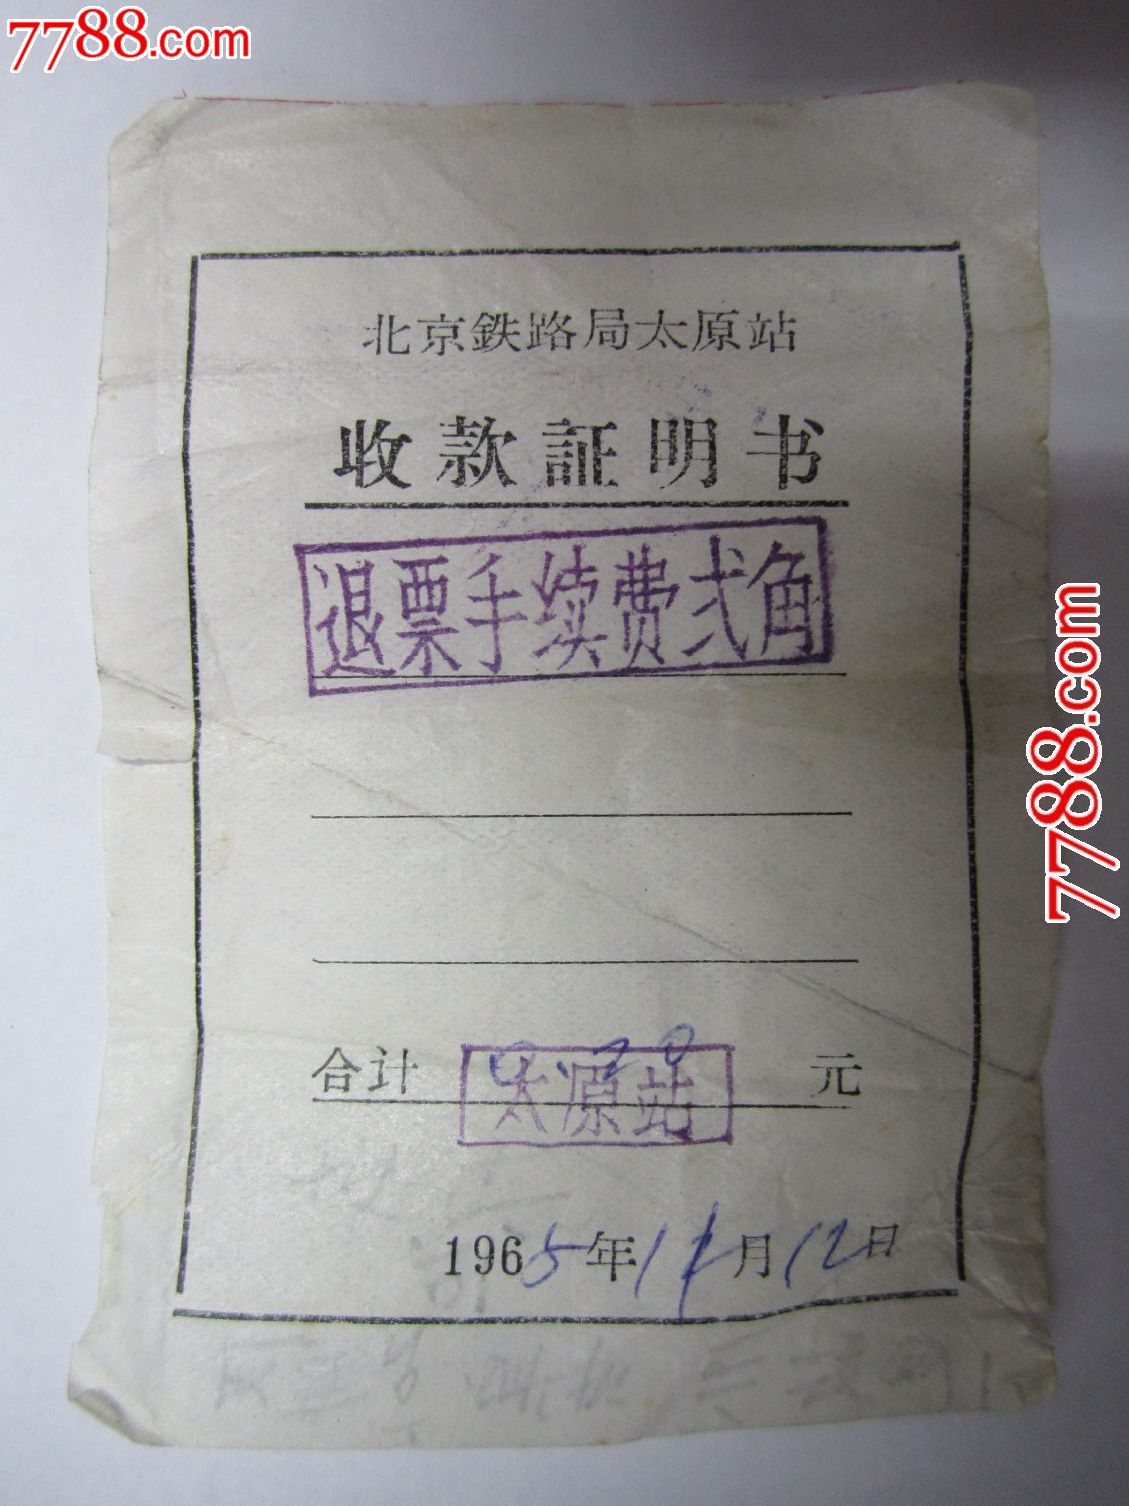 1965年:退票手续费2角(太原站)-价格:10元-se1